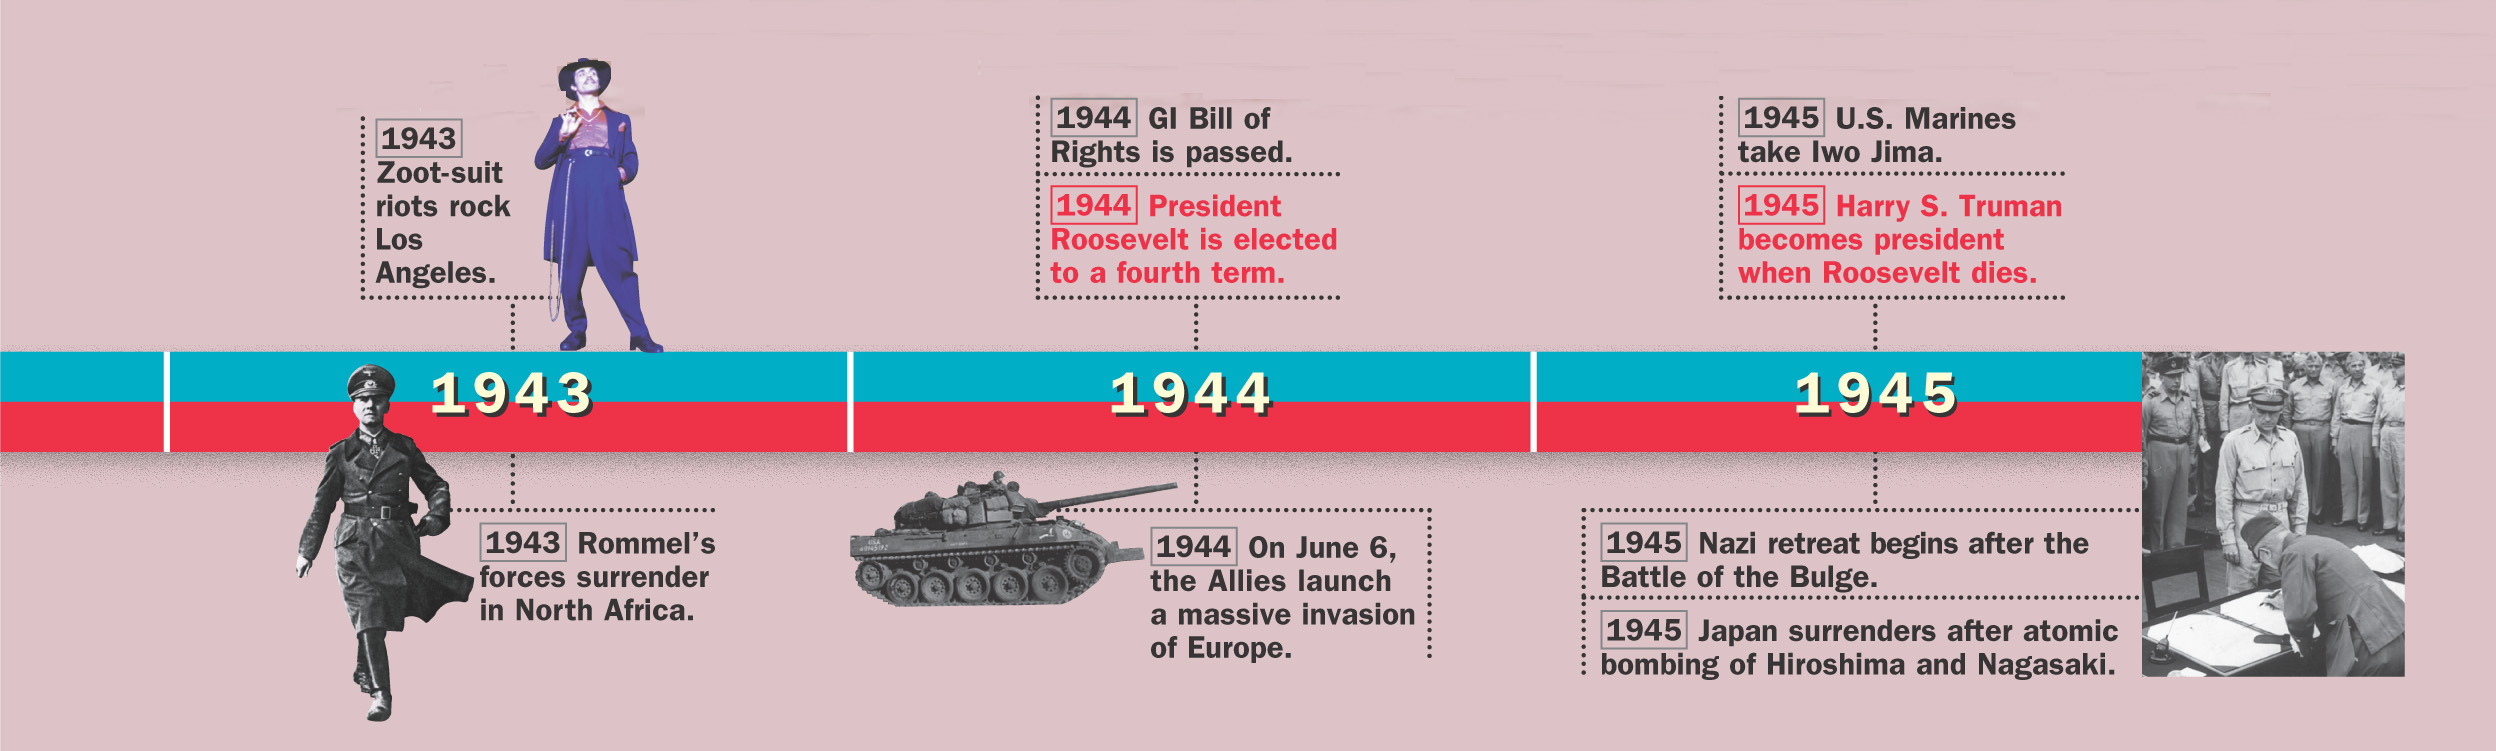 Timeline: 1943 - 1945 